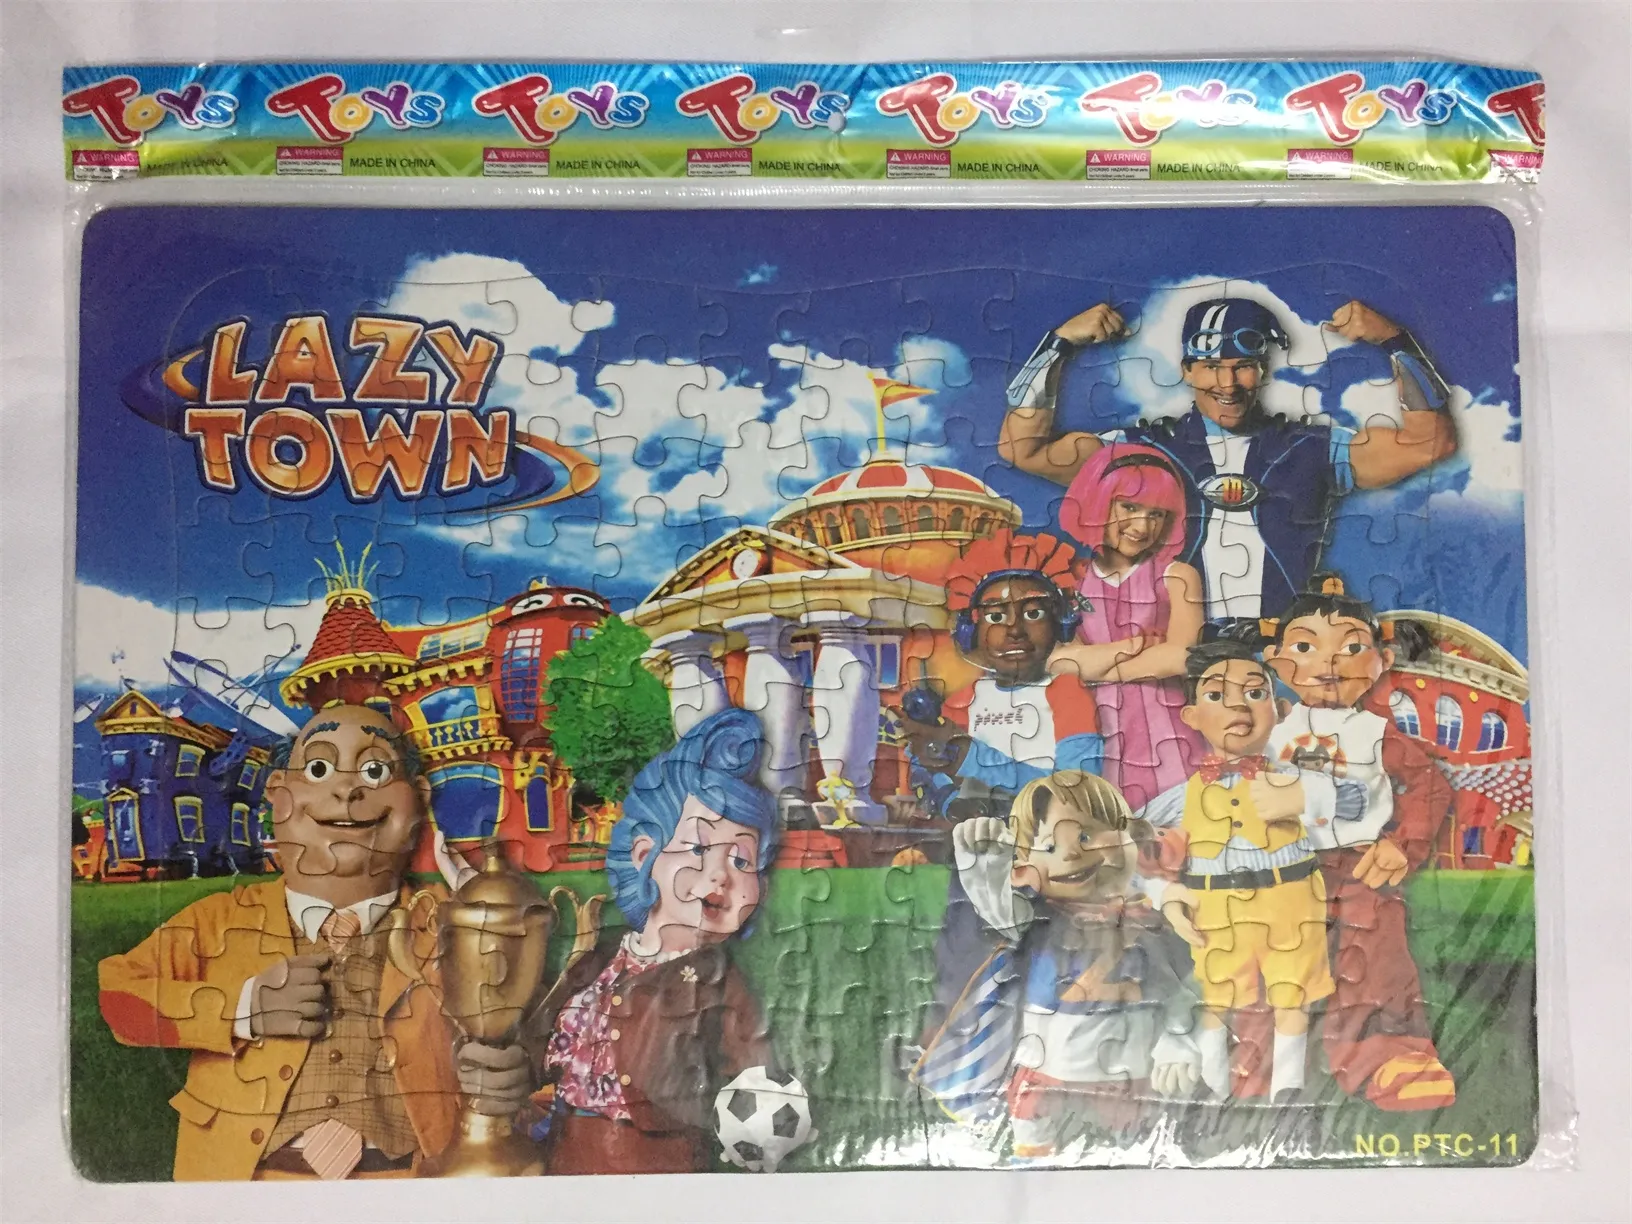 2018 Iwish 42x28cm怠惰な町ジグソーパズルラザイトタウン2D遊ぶサッカーパズルクリスマス子供のおもちゃ子供のための赤ちゃん玩具教育ゲーム